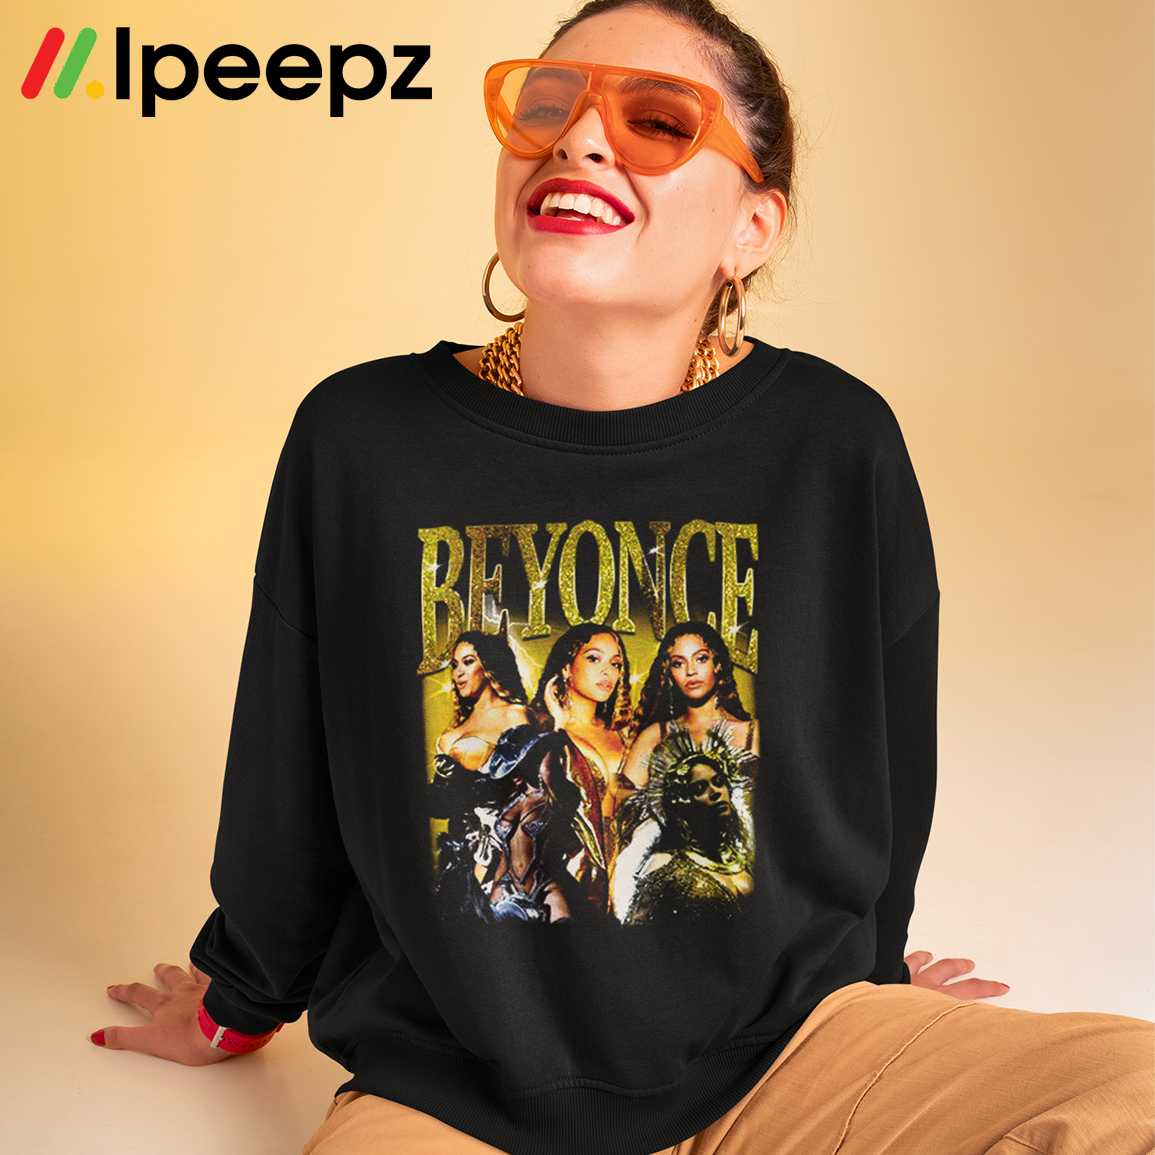 Ipeepz Beyonce Renaissance World Tour Vintage 90s Shirt